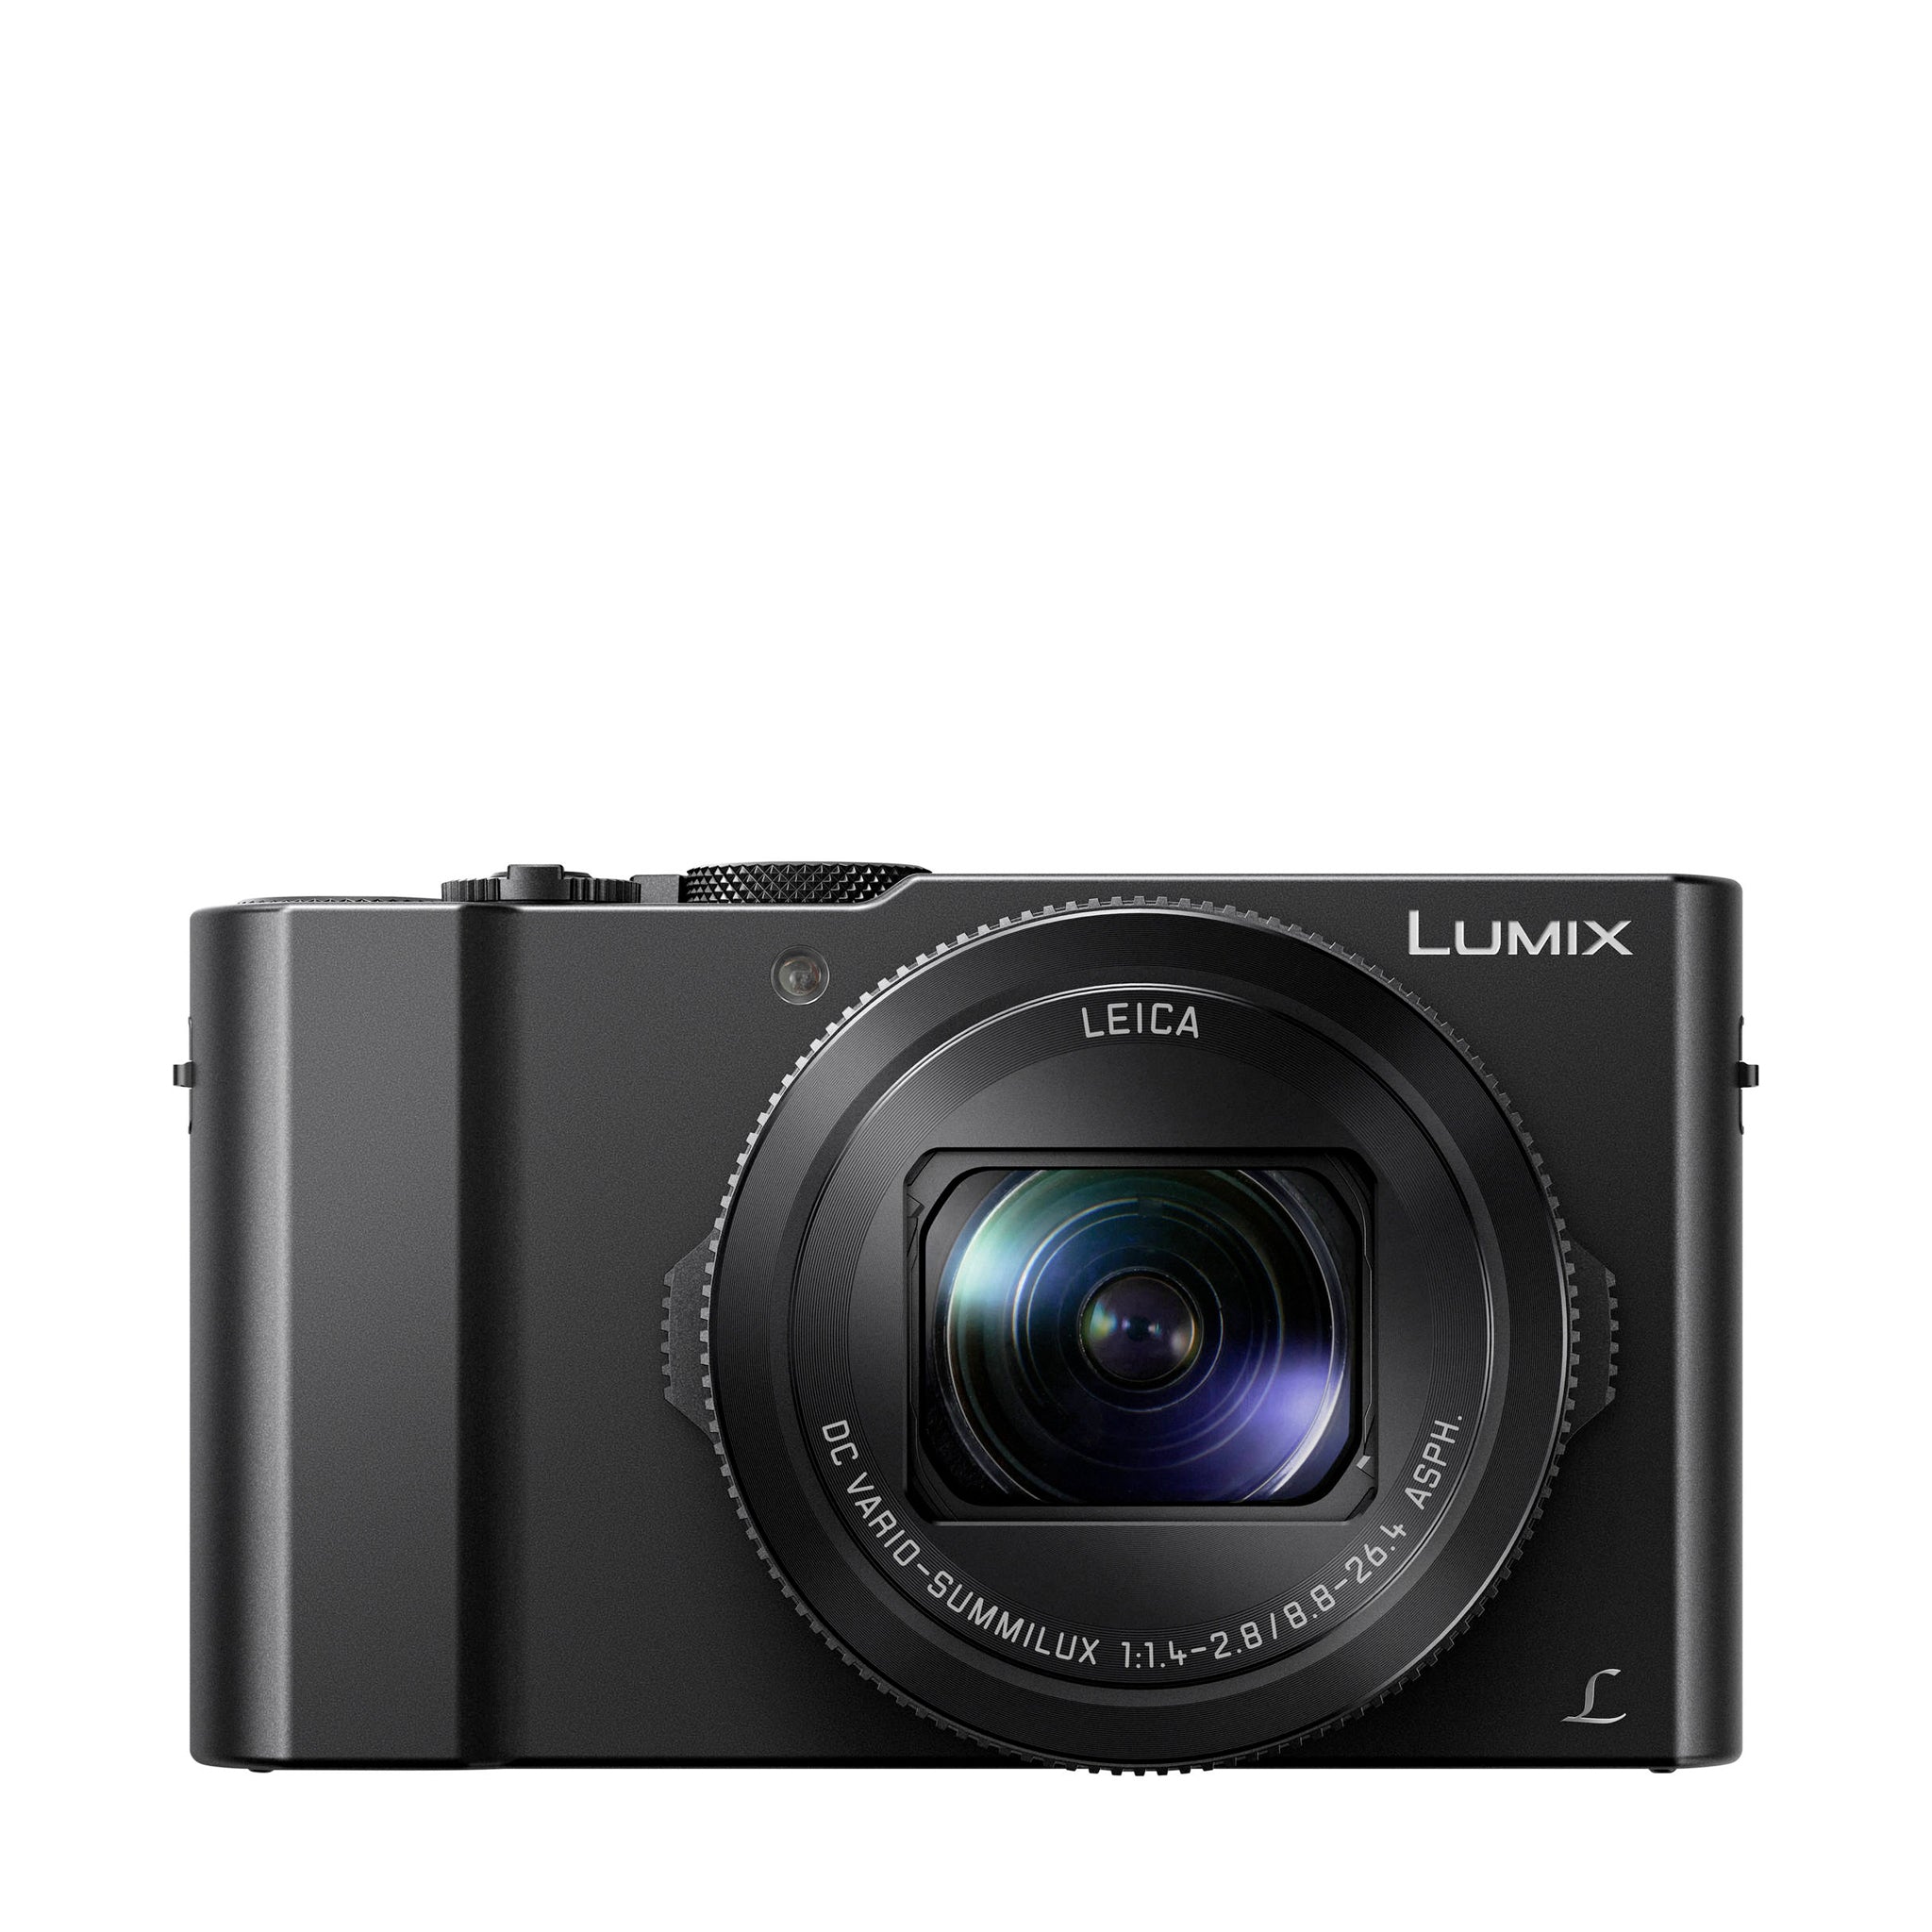 LX10 Digital Camera + 24-72mm F1.7-2.8 Lens